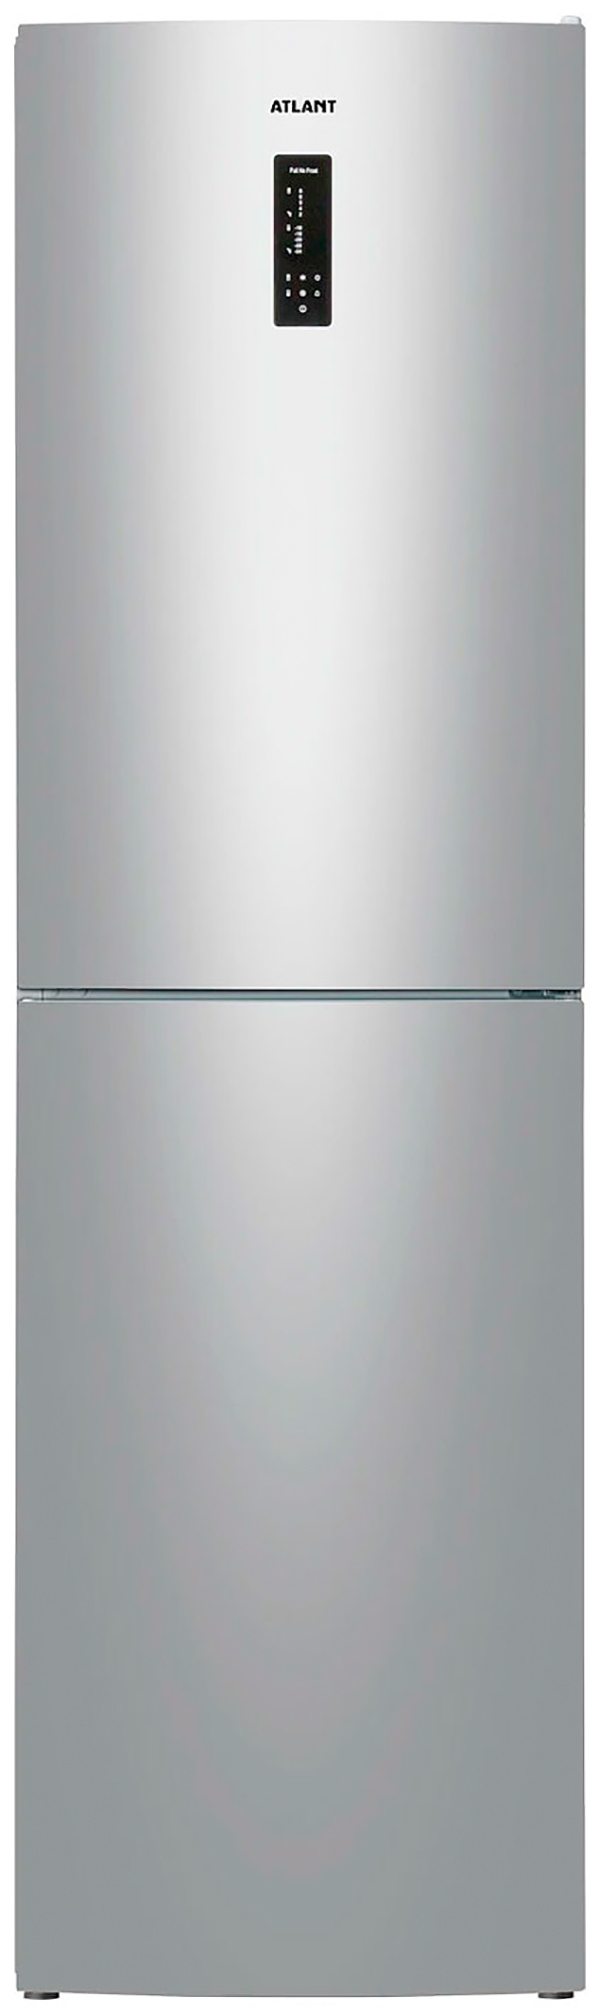 Холодильник ATLANT ХМ 4625-181 NL C серебристый беспроводной цифровой термометр для холодильника звуковая сигнализация внутренний наружный термометр